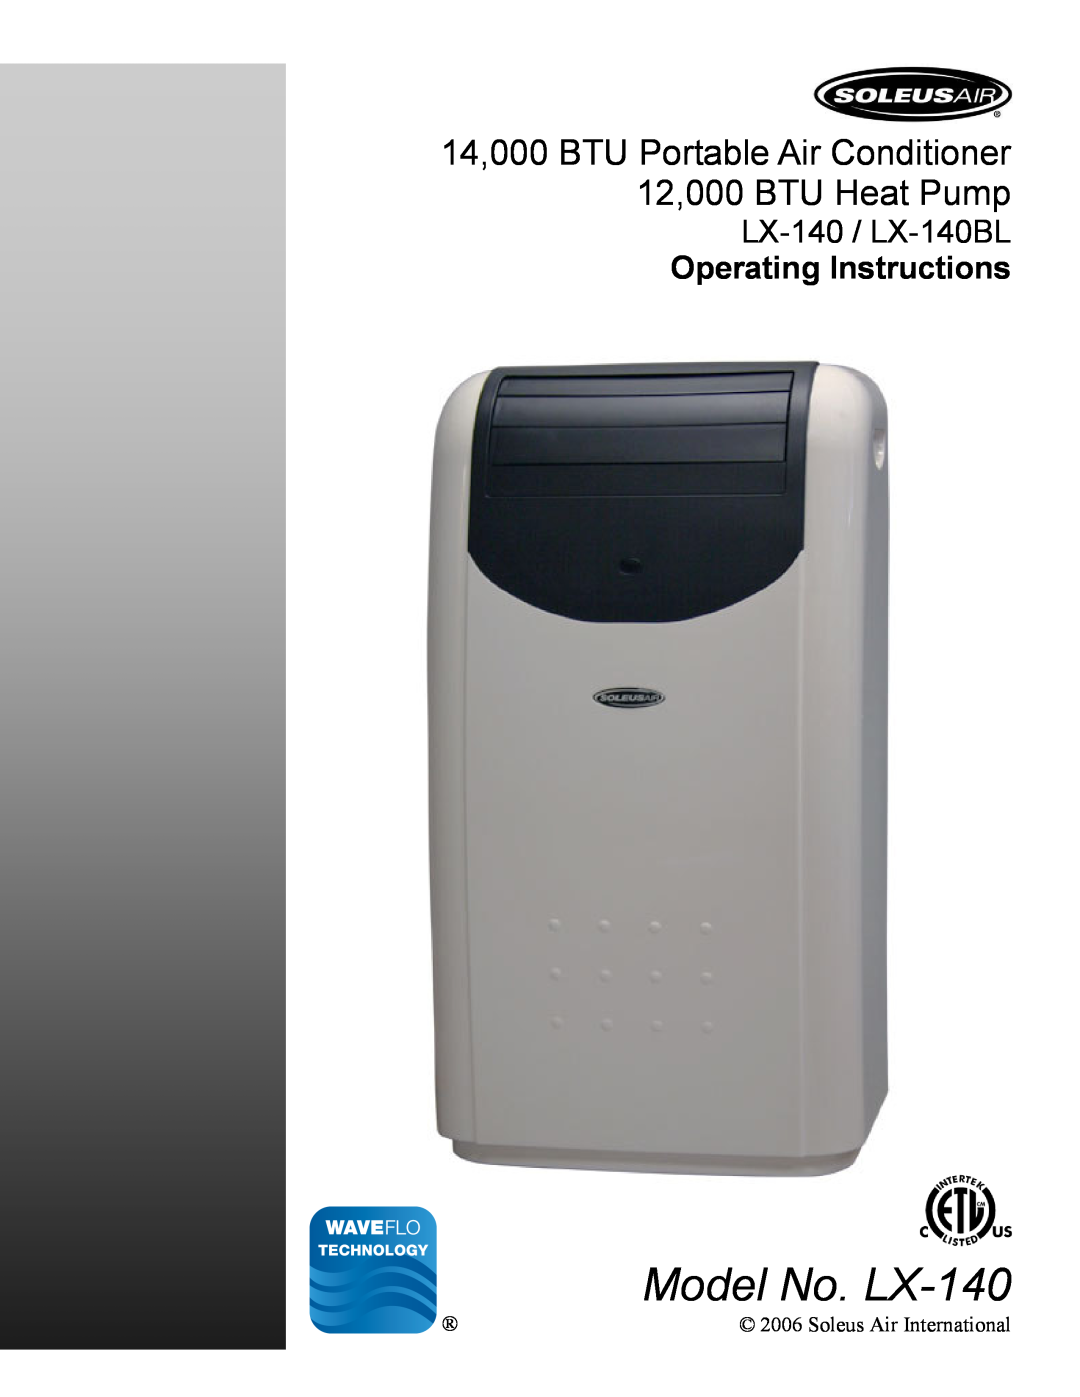 Soleus Air LX-140BL operating instructions Model No. LX-140, 14,000 BTU Portable Air Conditioner, 12,000 BTU Heat Pump 